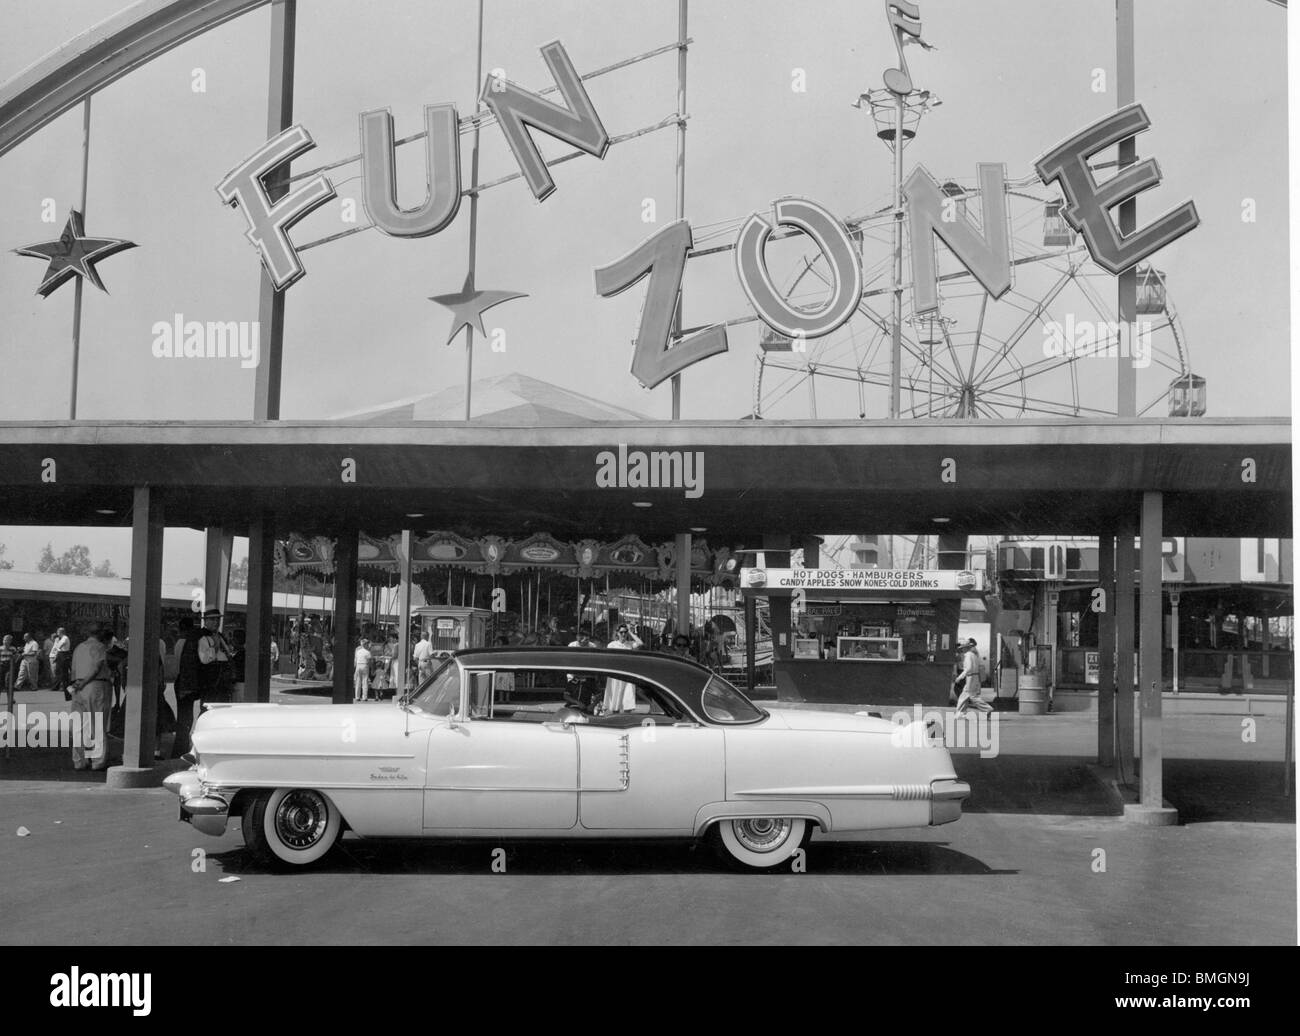 1956 Cadillac Sedan De Ville in California Stock Photo